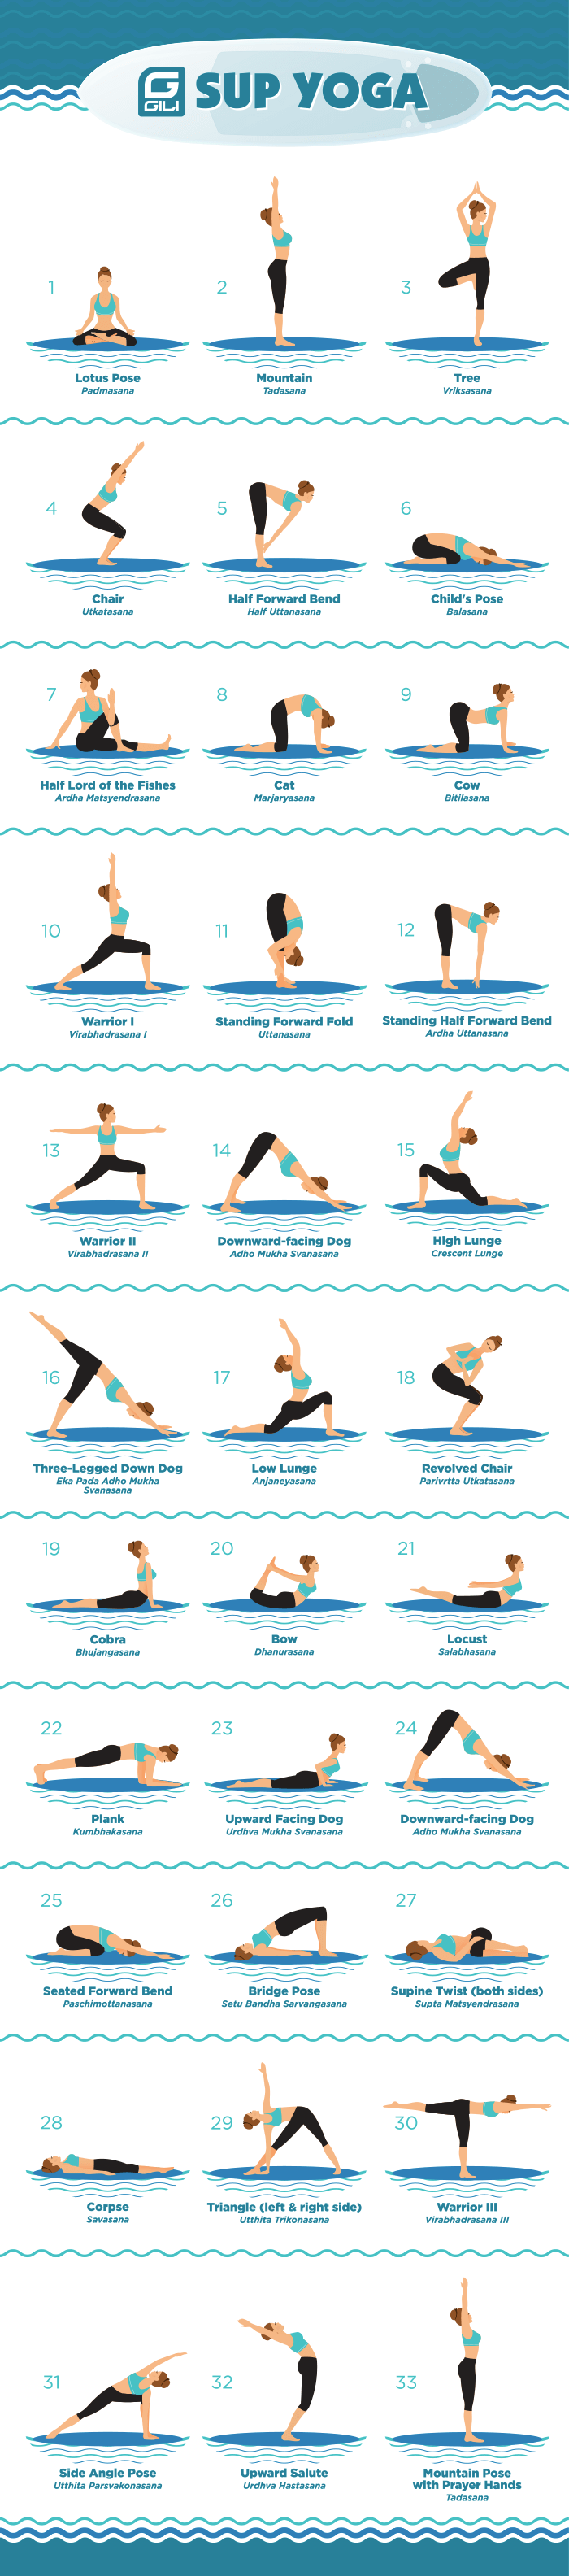 Beispiel für eine SUP-Yoga-Routine